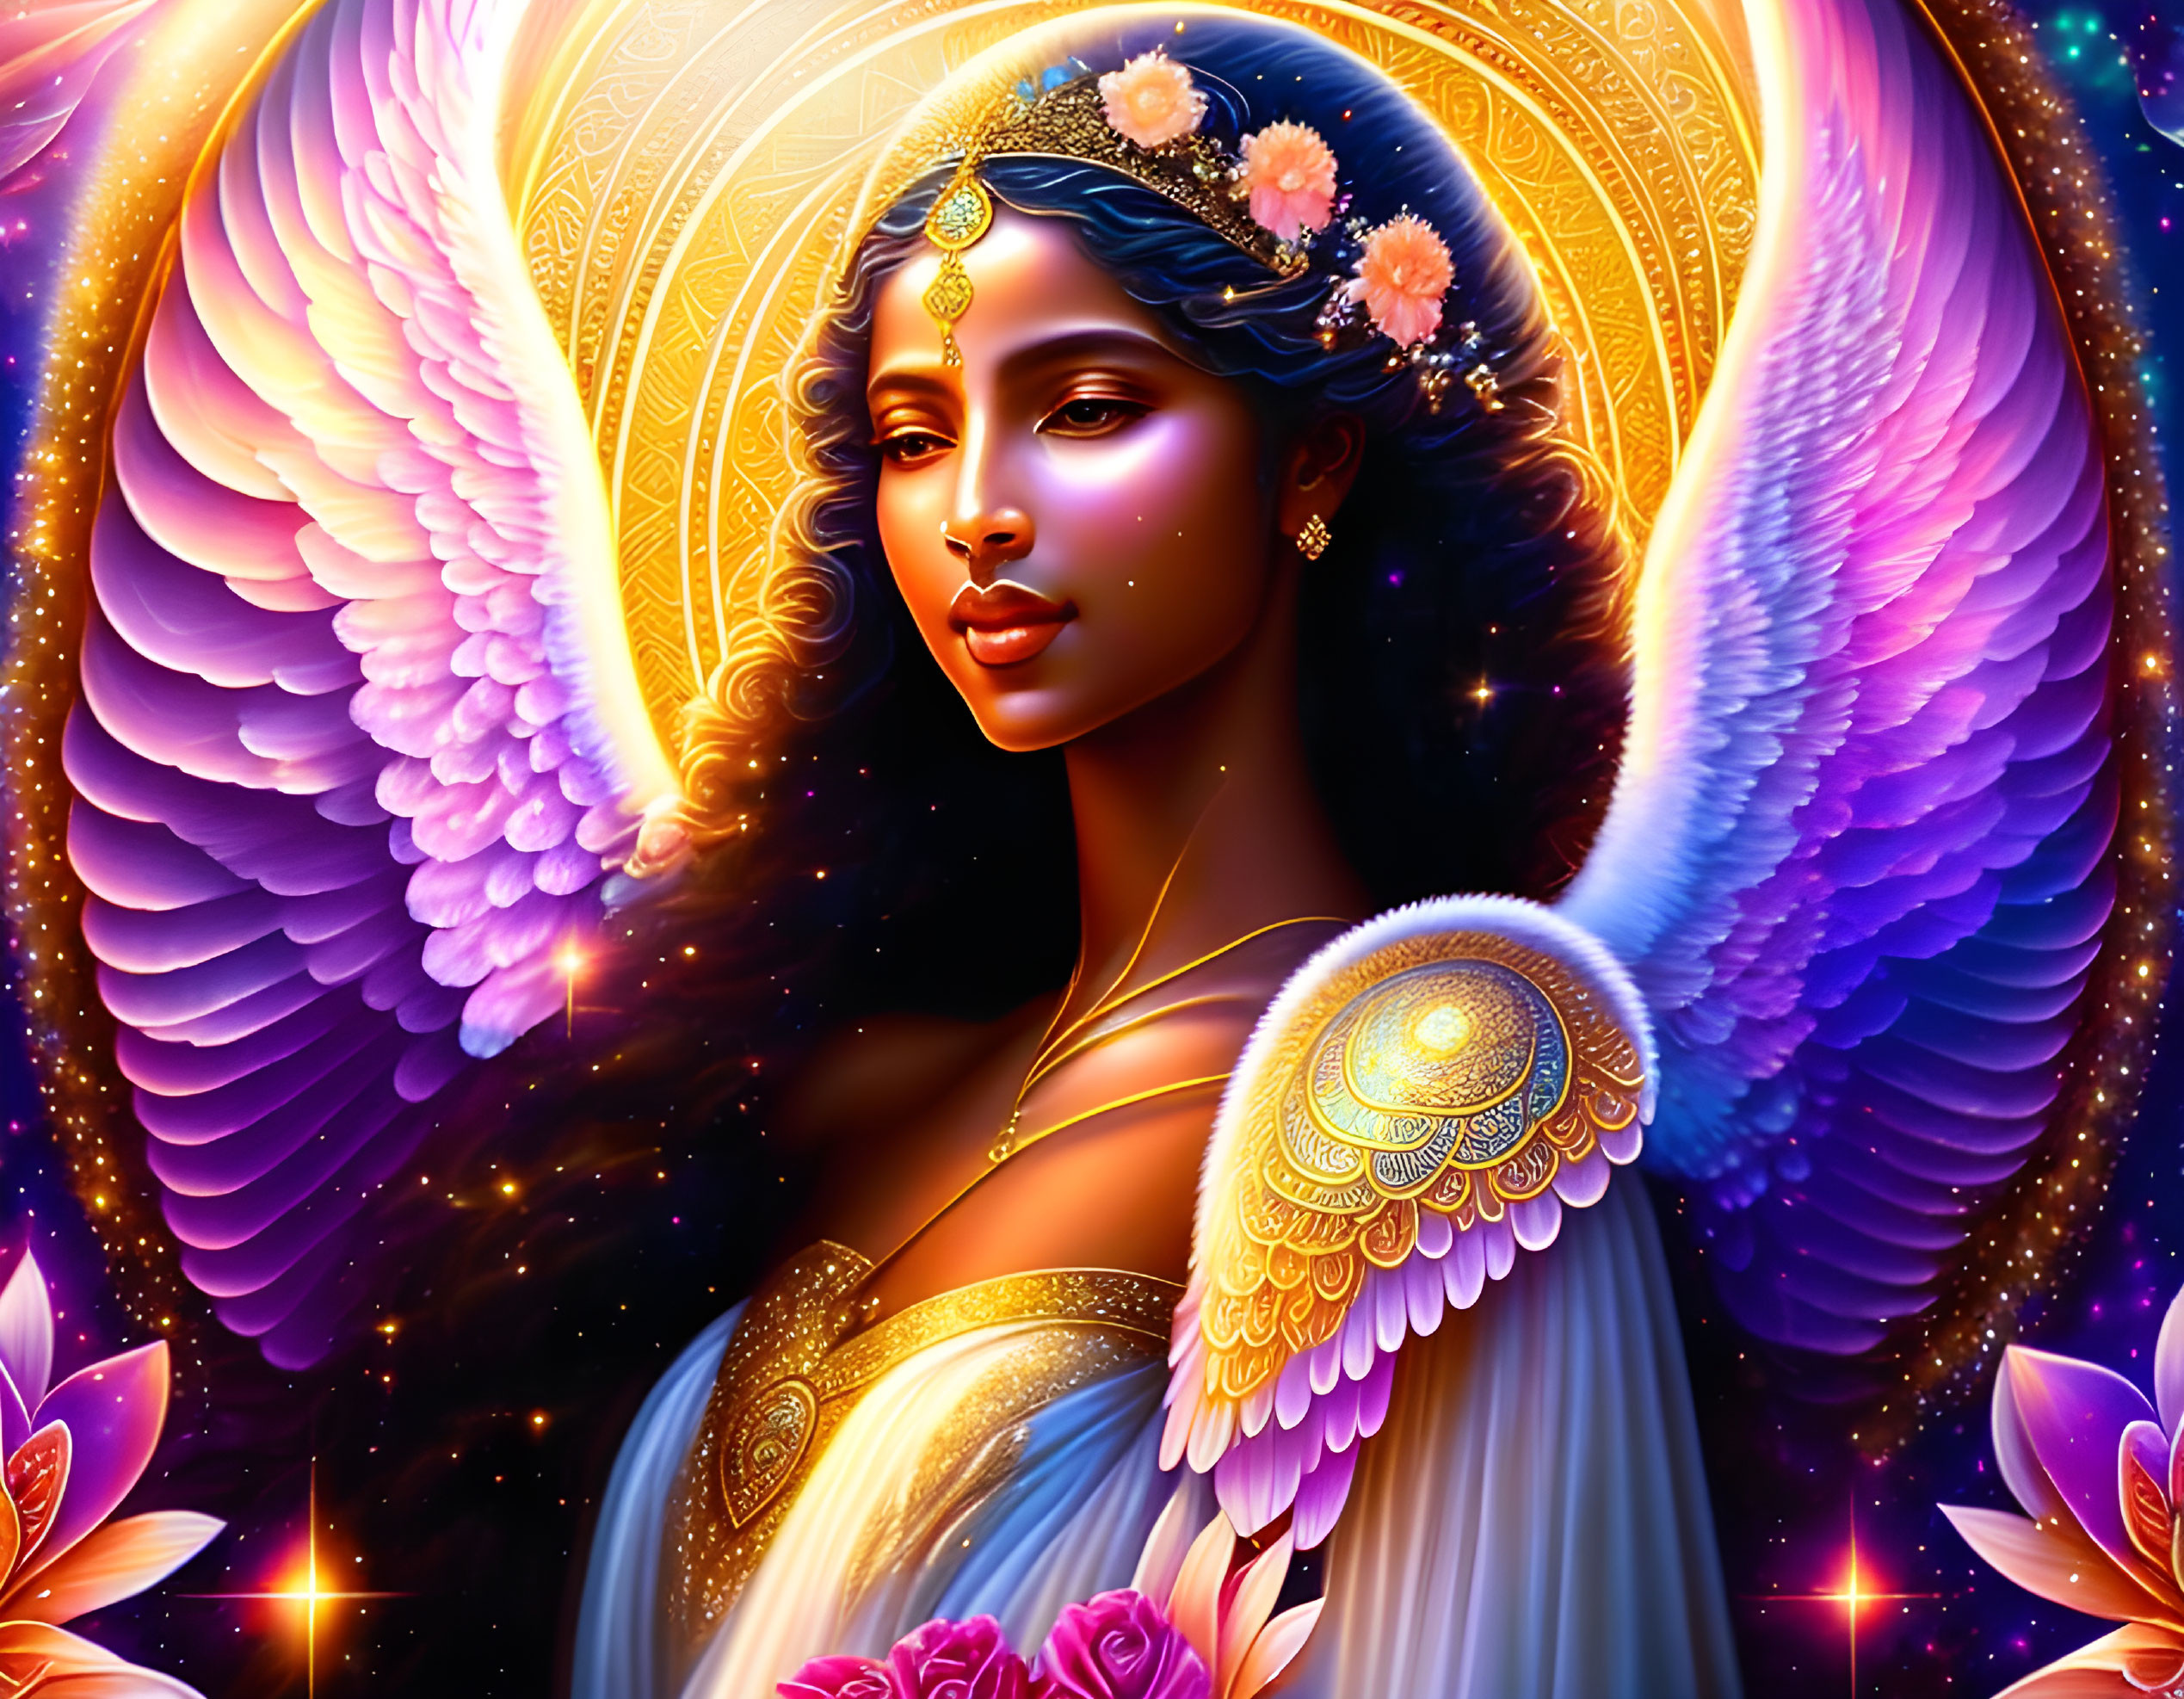 Angel Goddess of Love